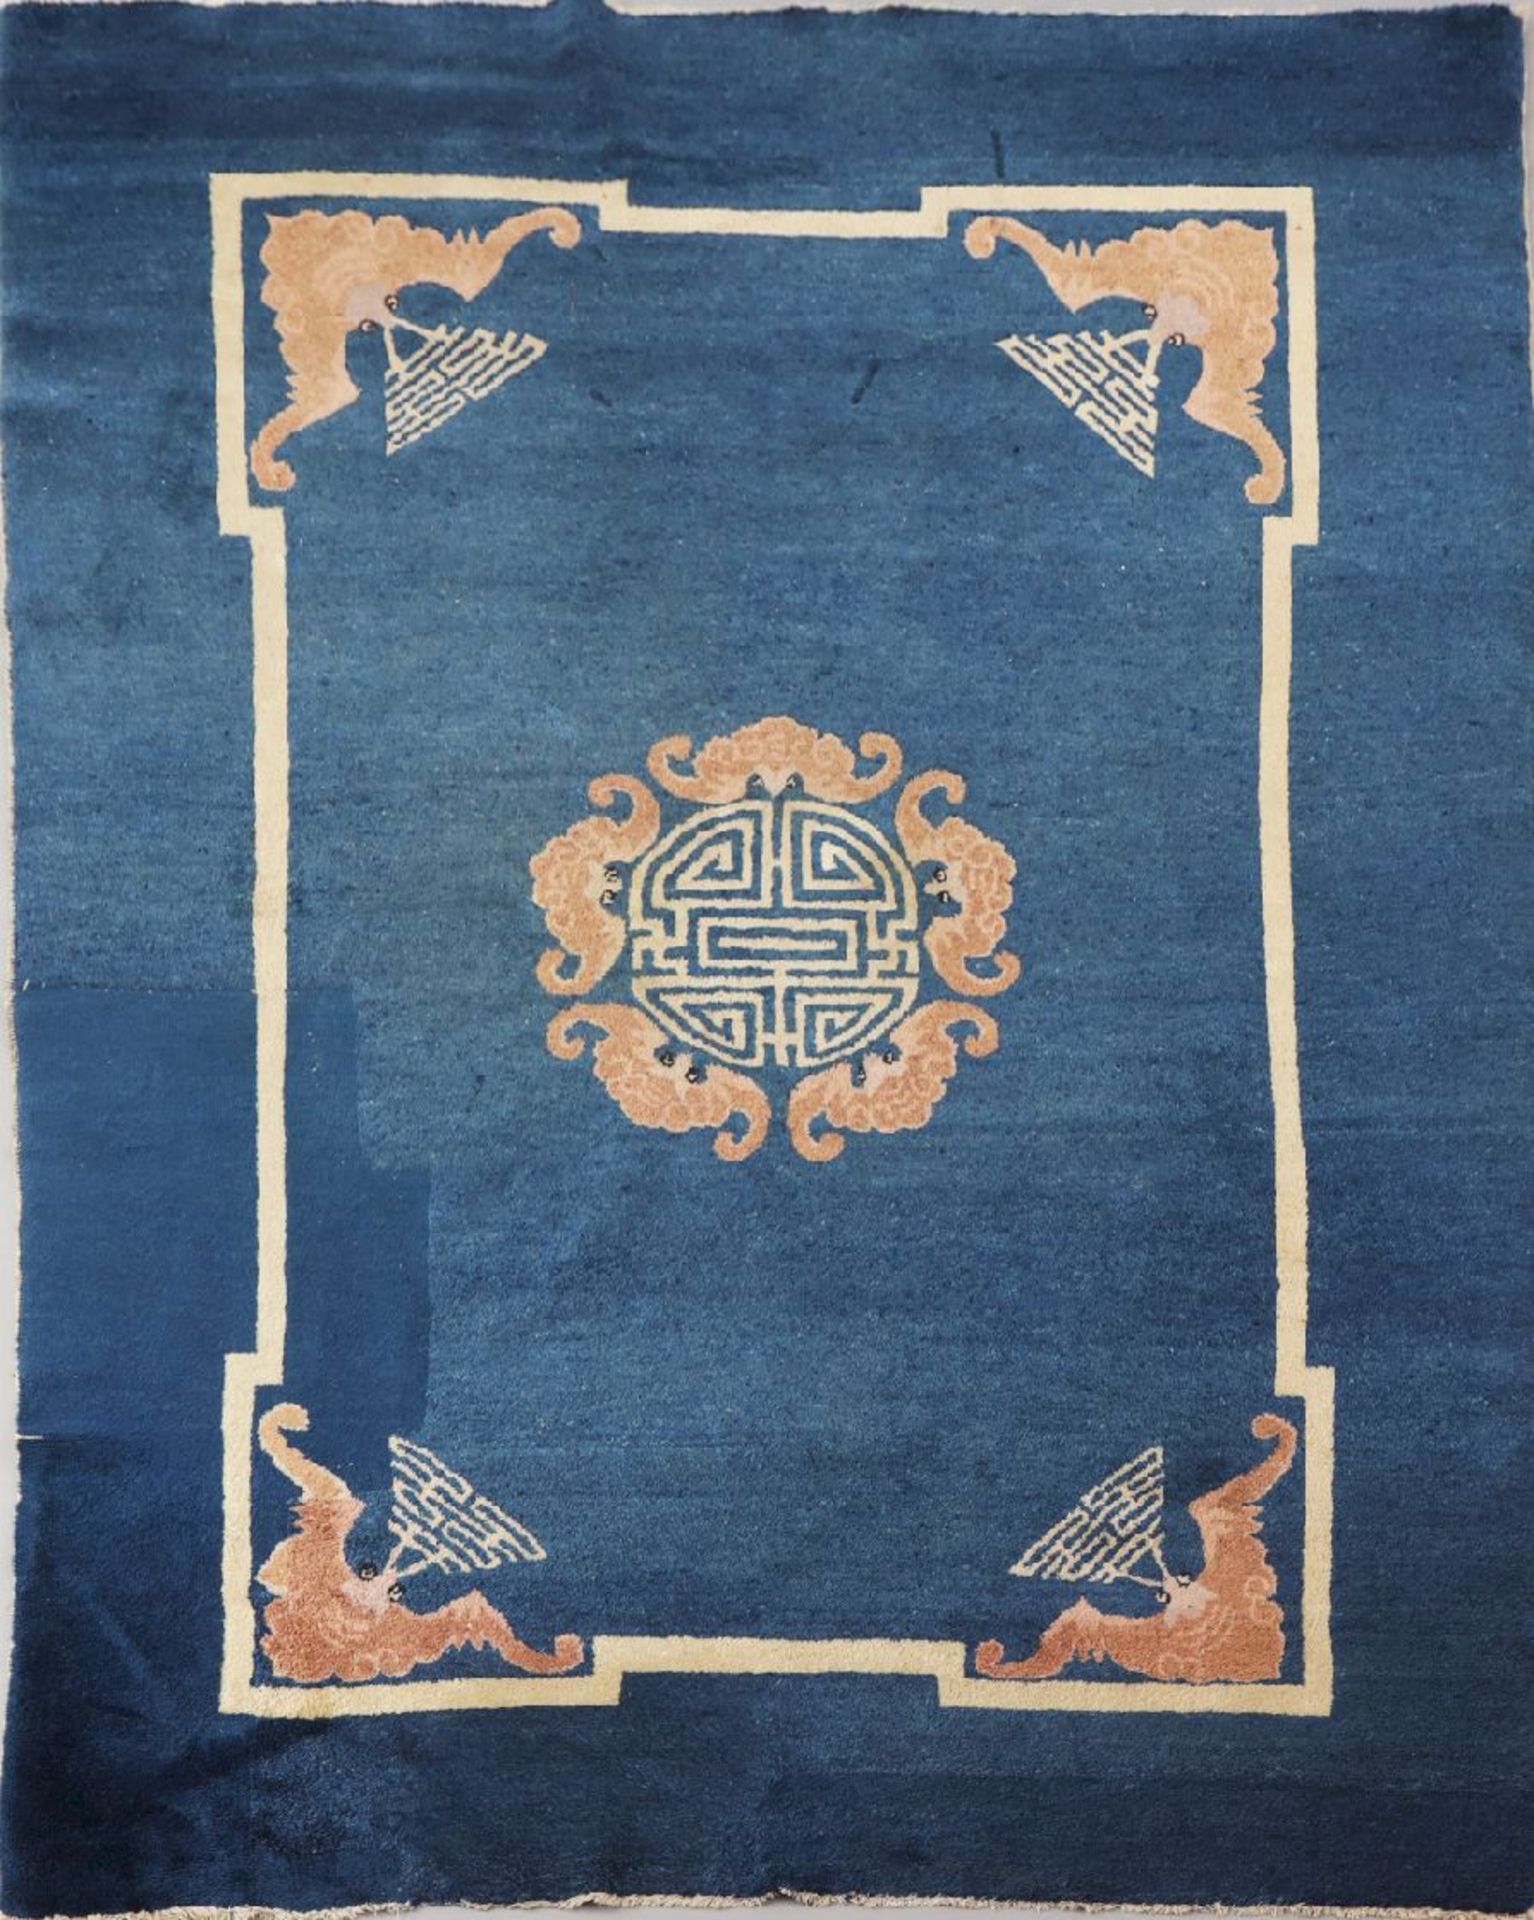 Chinesischer TeppichRaum Peking, um 1900, blaugrundig, Zentralmedaillon mit chinesischen